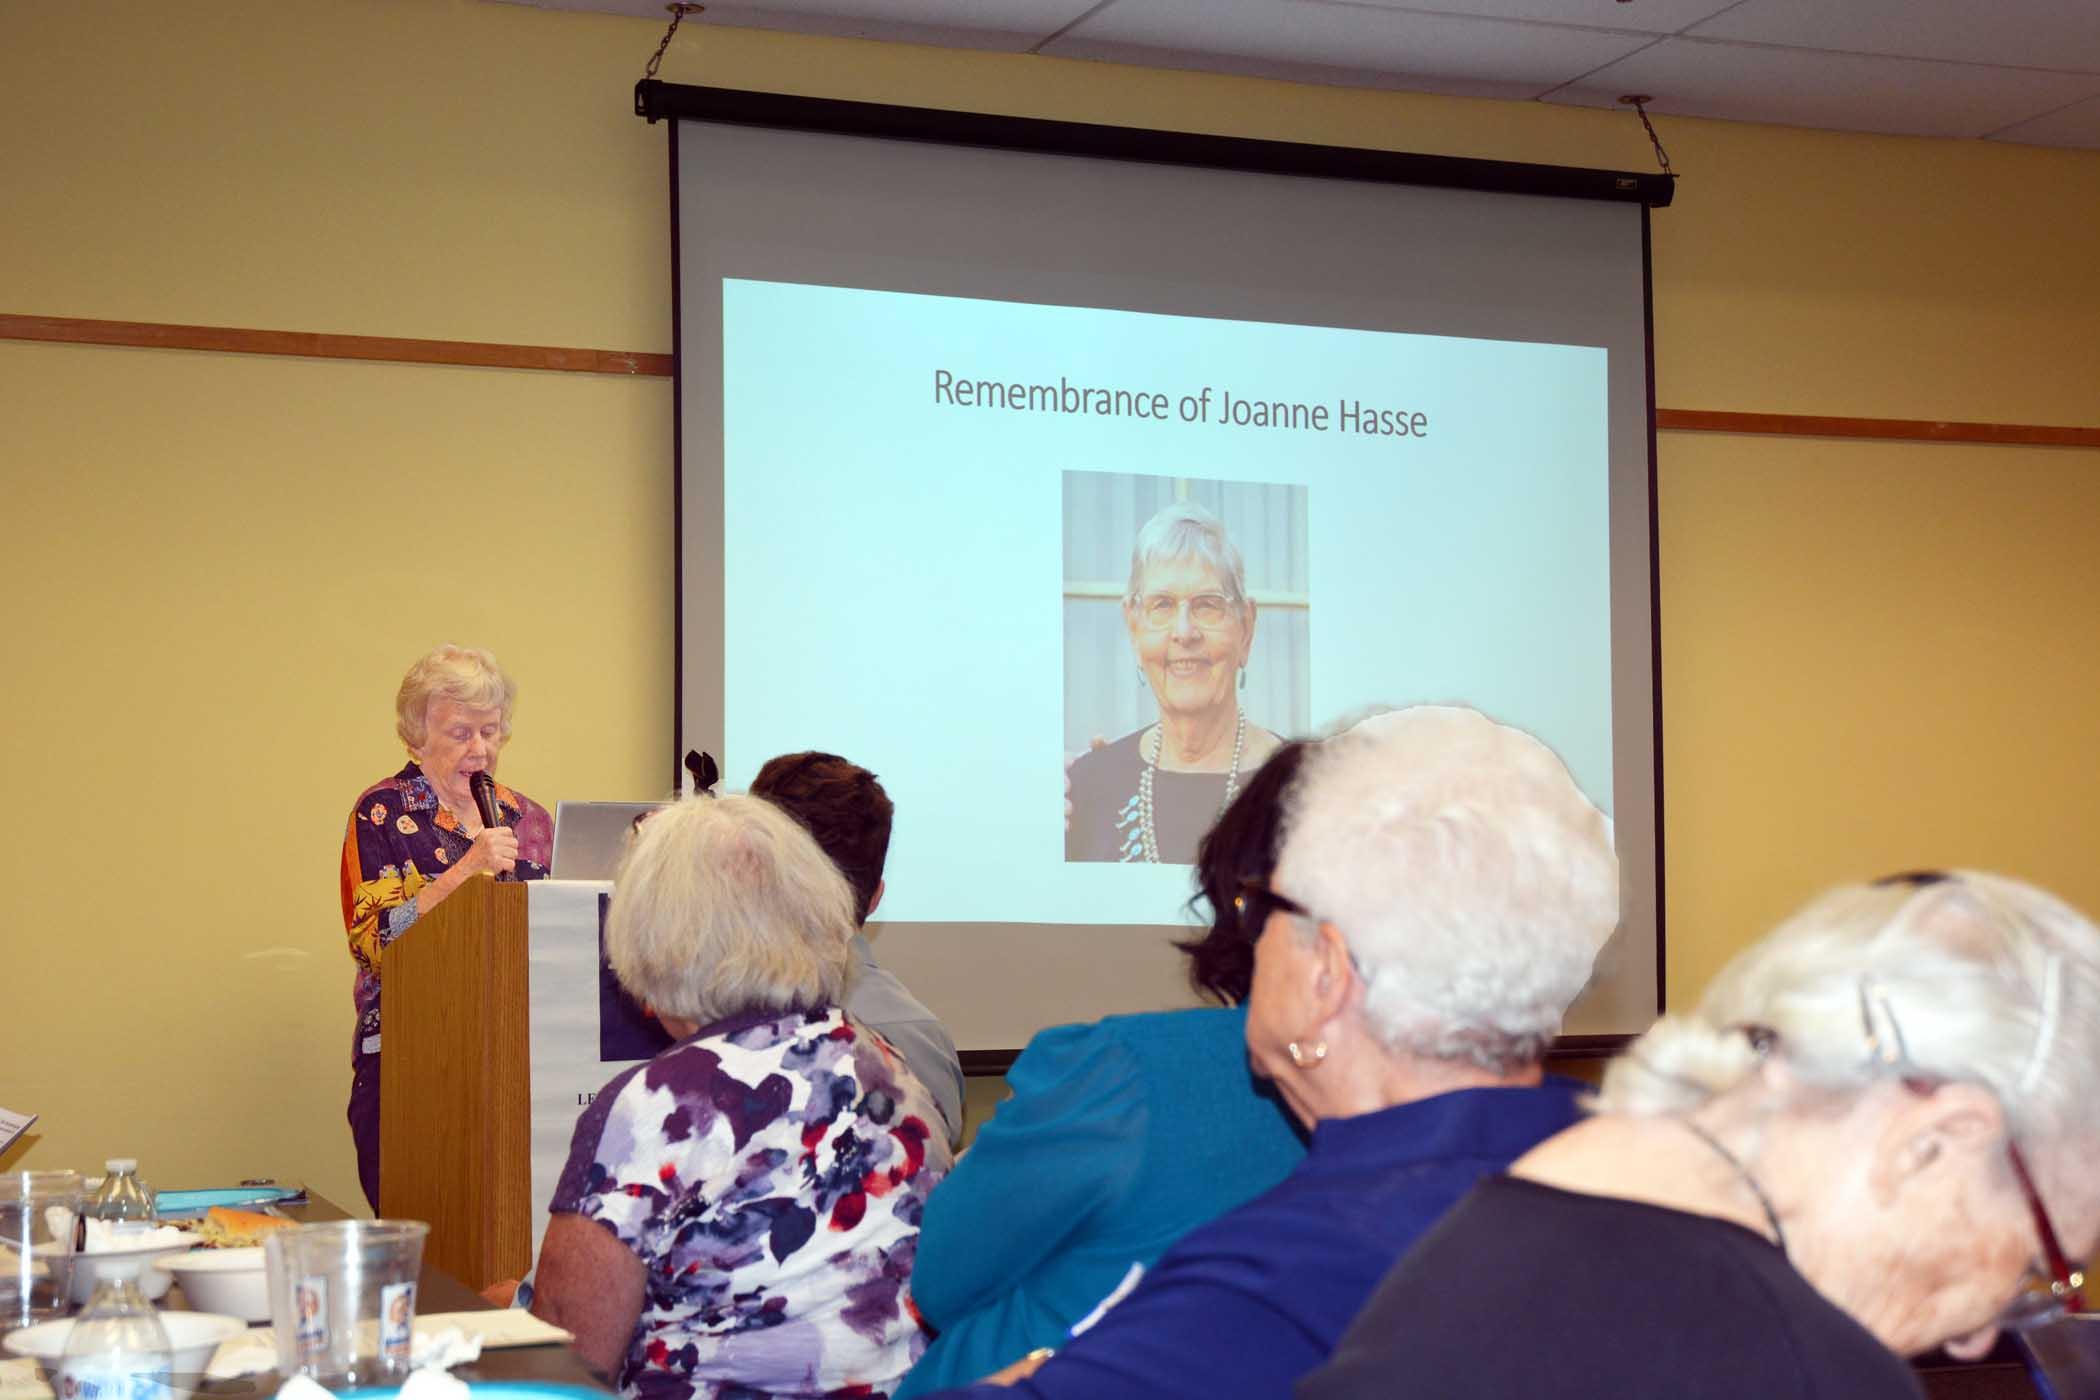 Marj Johnson speaking, "Remembrance of Joann Hasse" slide